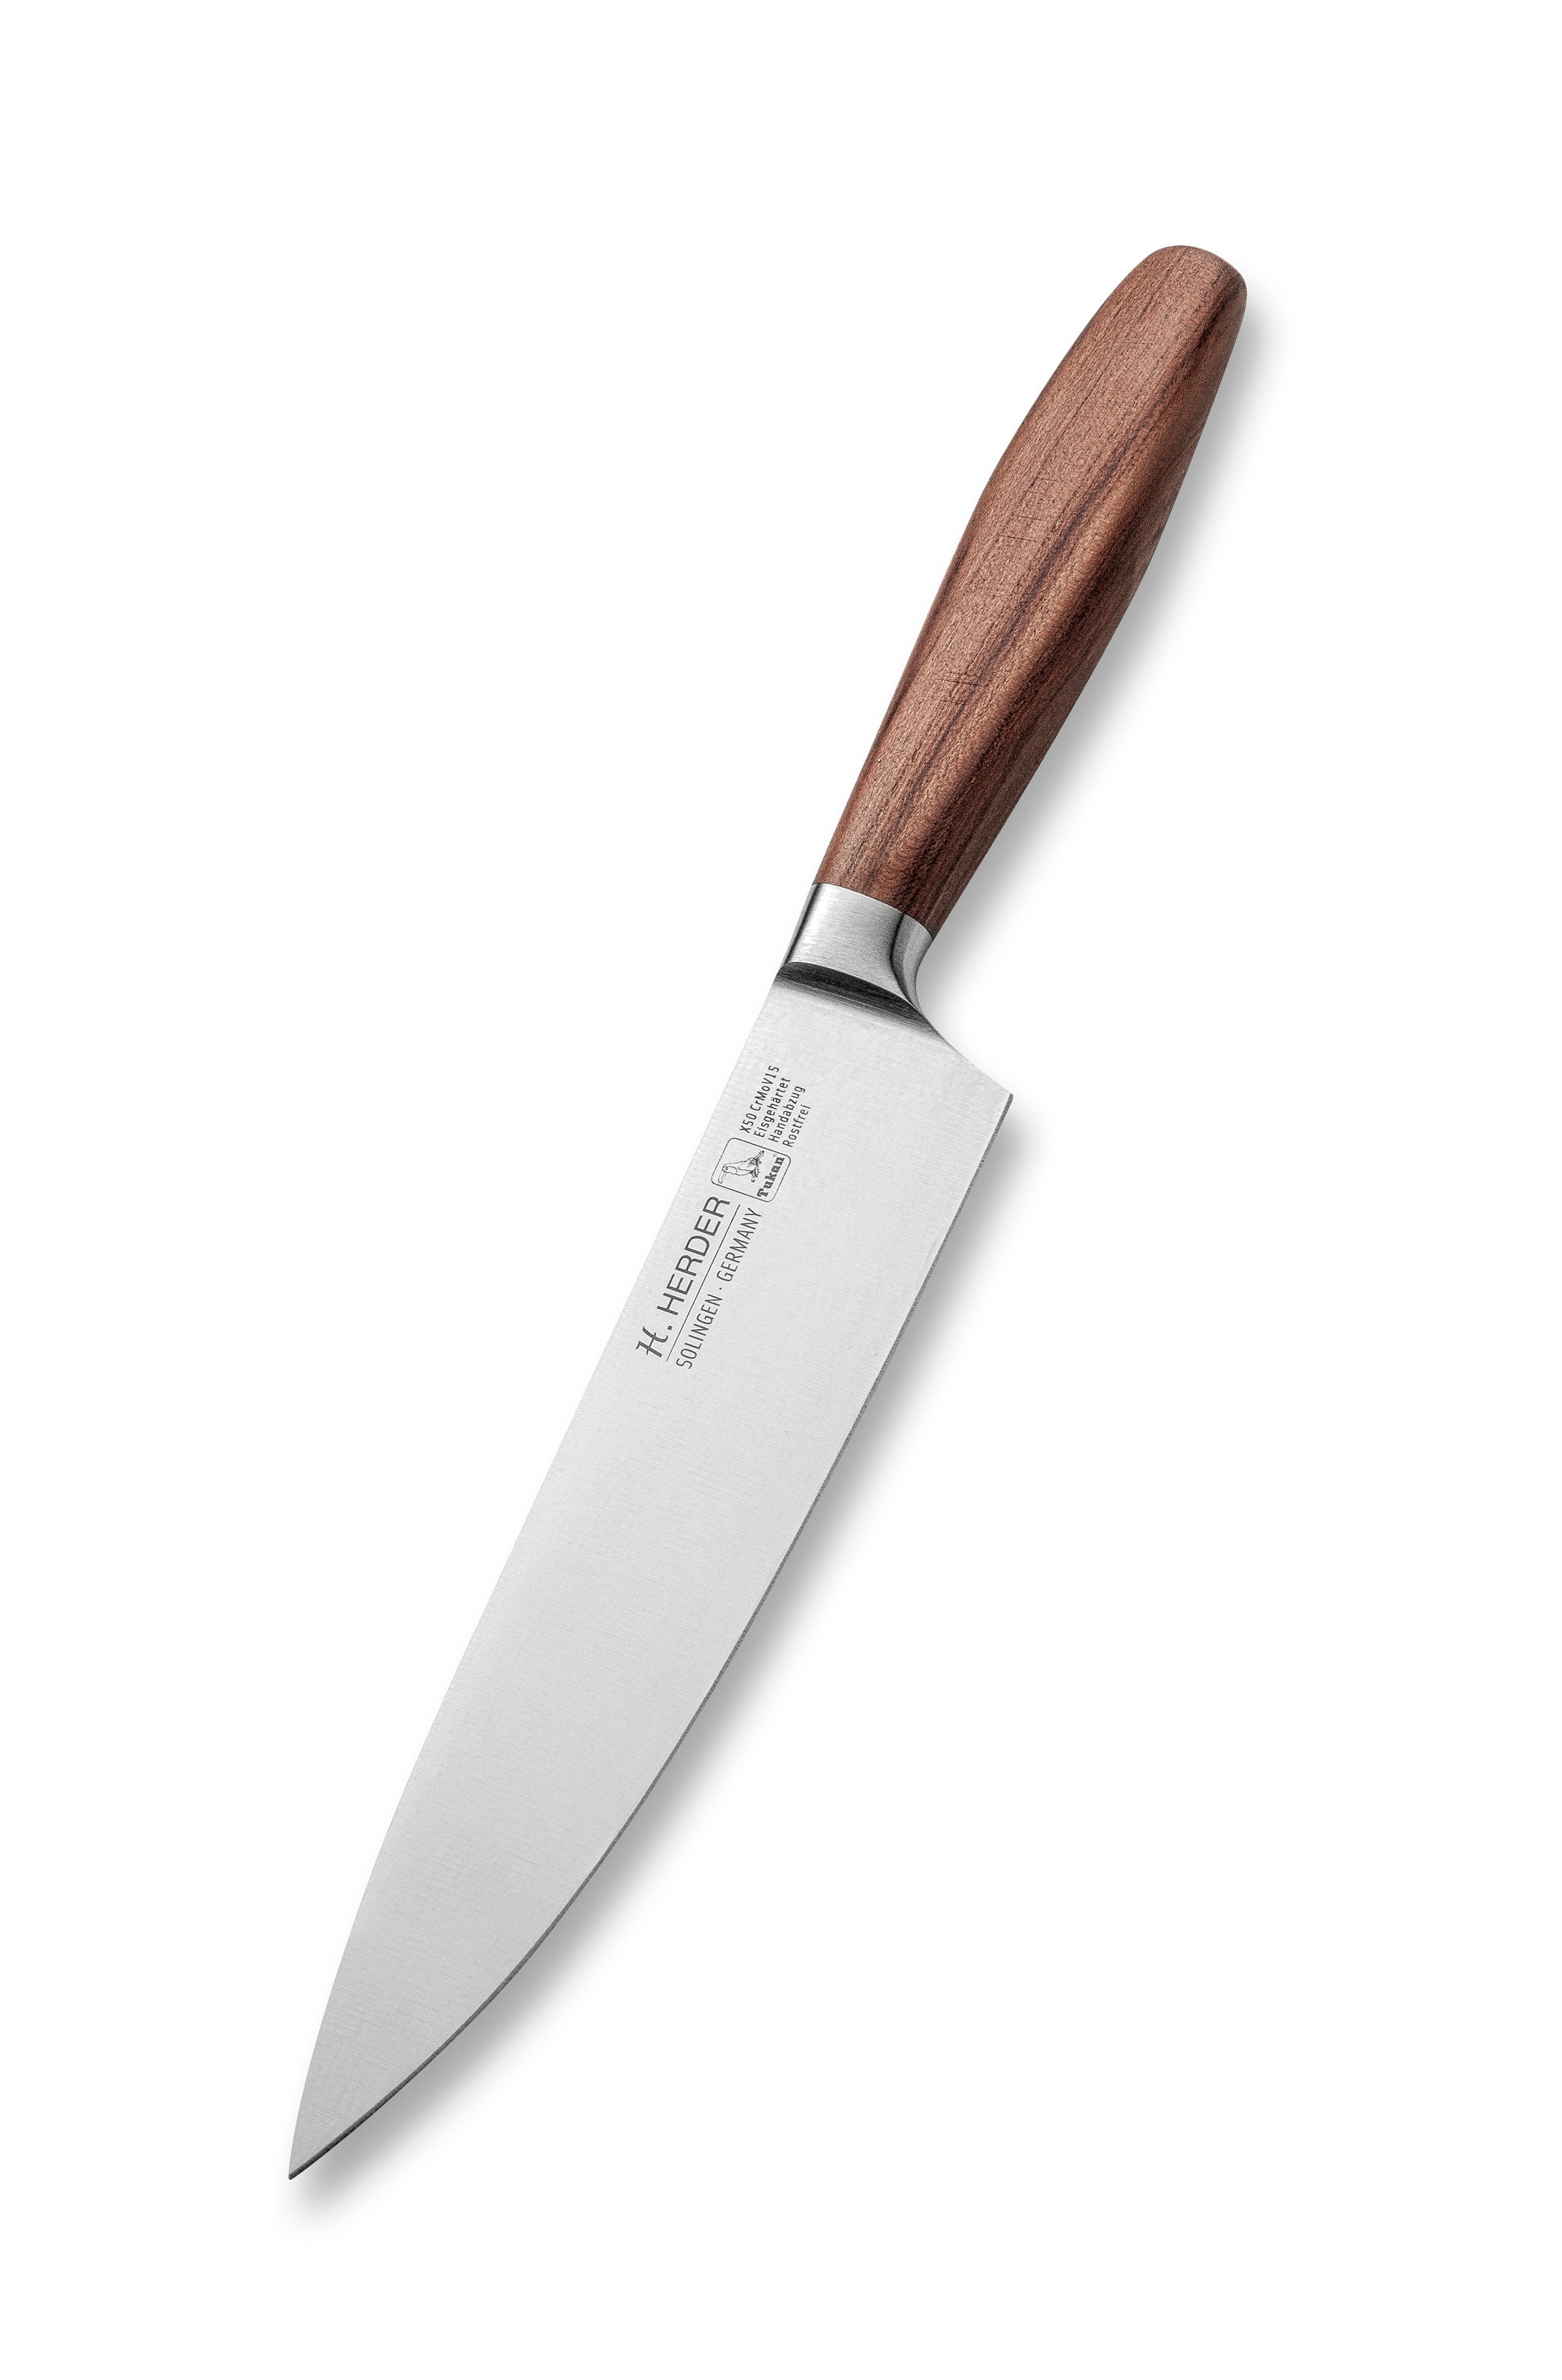 Couteau de chef Eterno, bois de prunier, longueur de lame 21cm, forgé